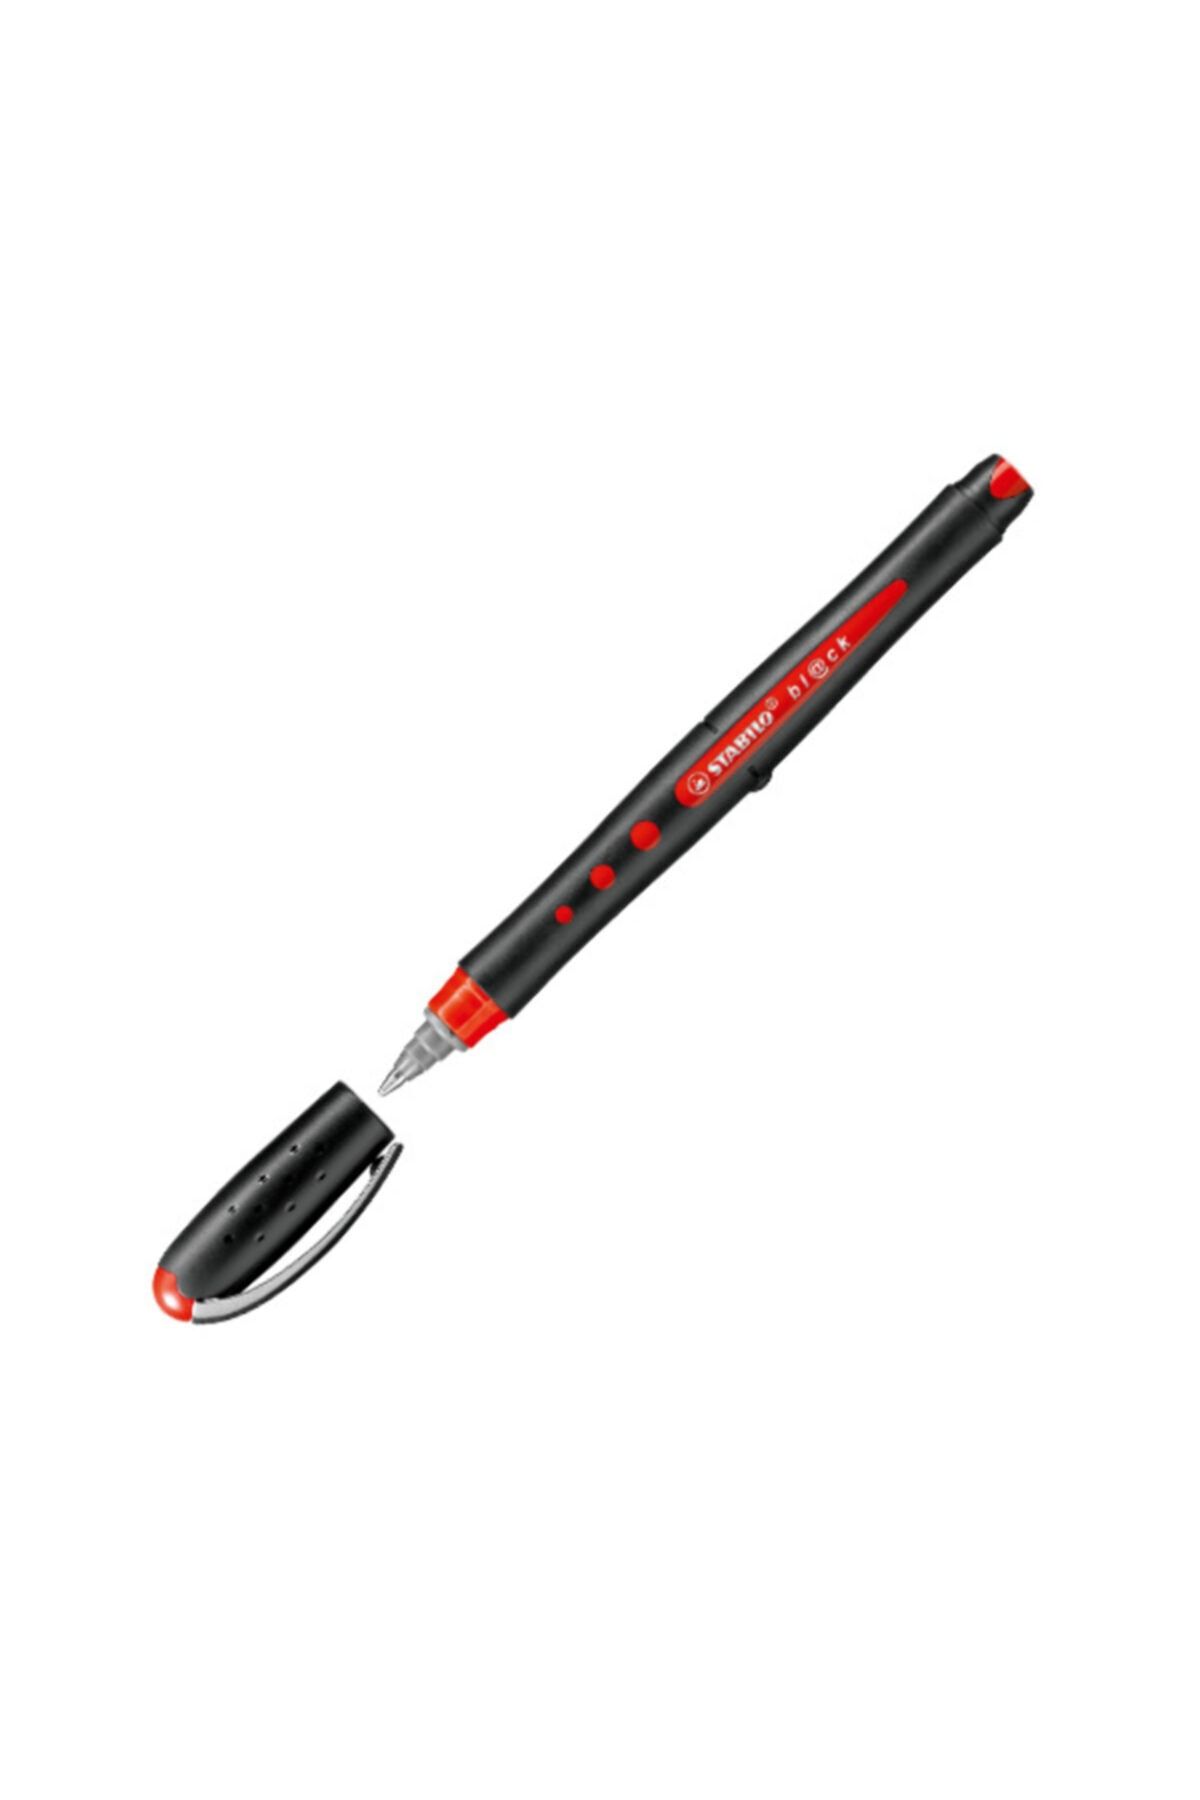 Stabilo Stabılo 1018/40kırmızı (10 LU PAKET)roller Kalem Black Bilye Uç Medium